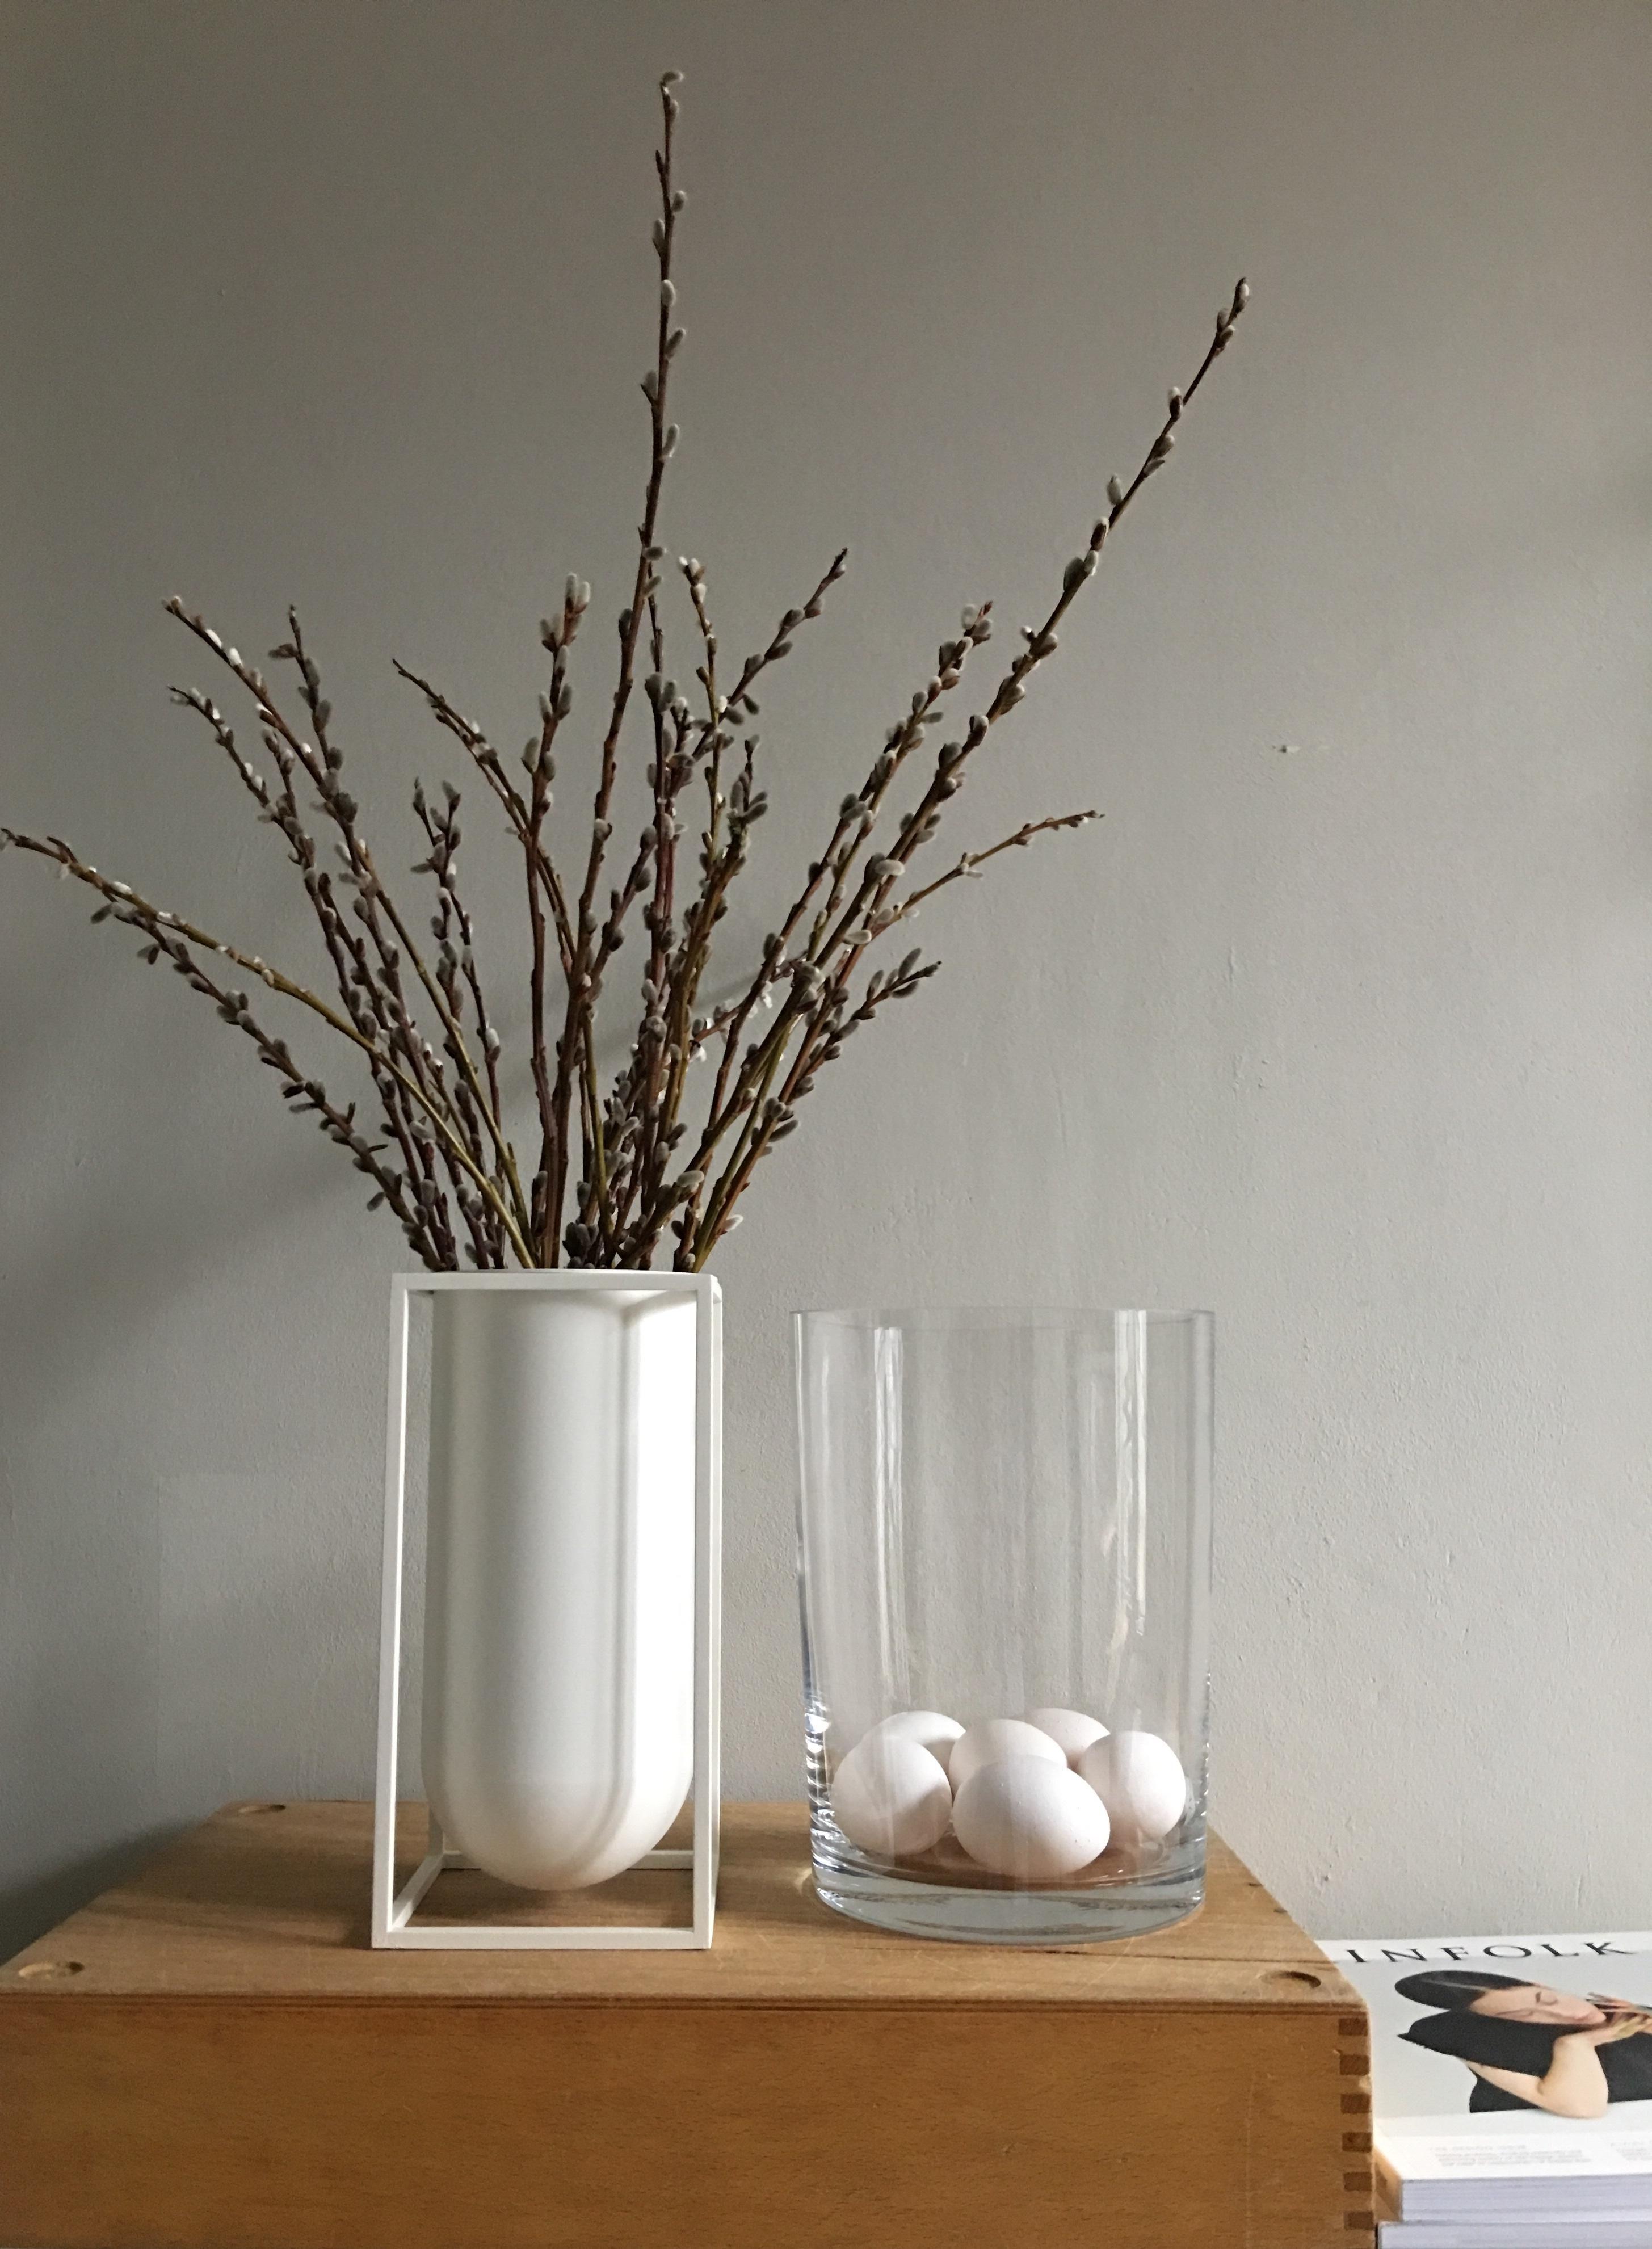 #ostern #osterdeko #zweige #frühling #homedeco #dekoration #minimalistisch #vase #bylassen 